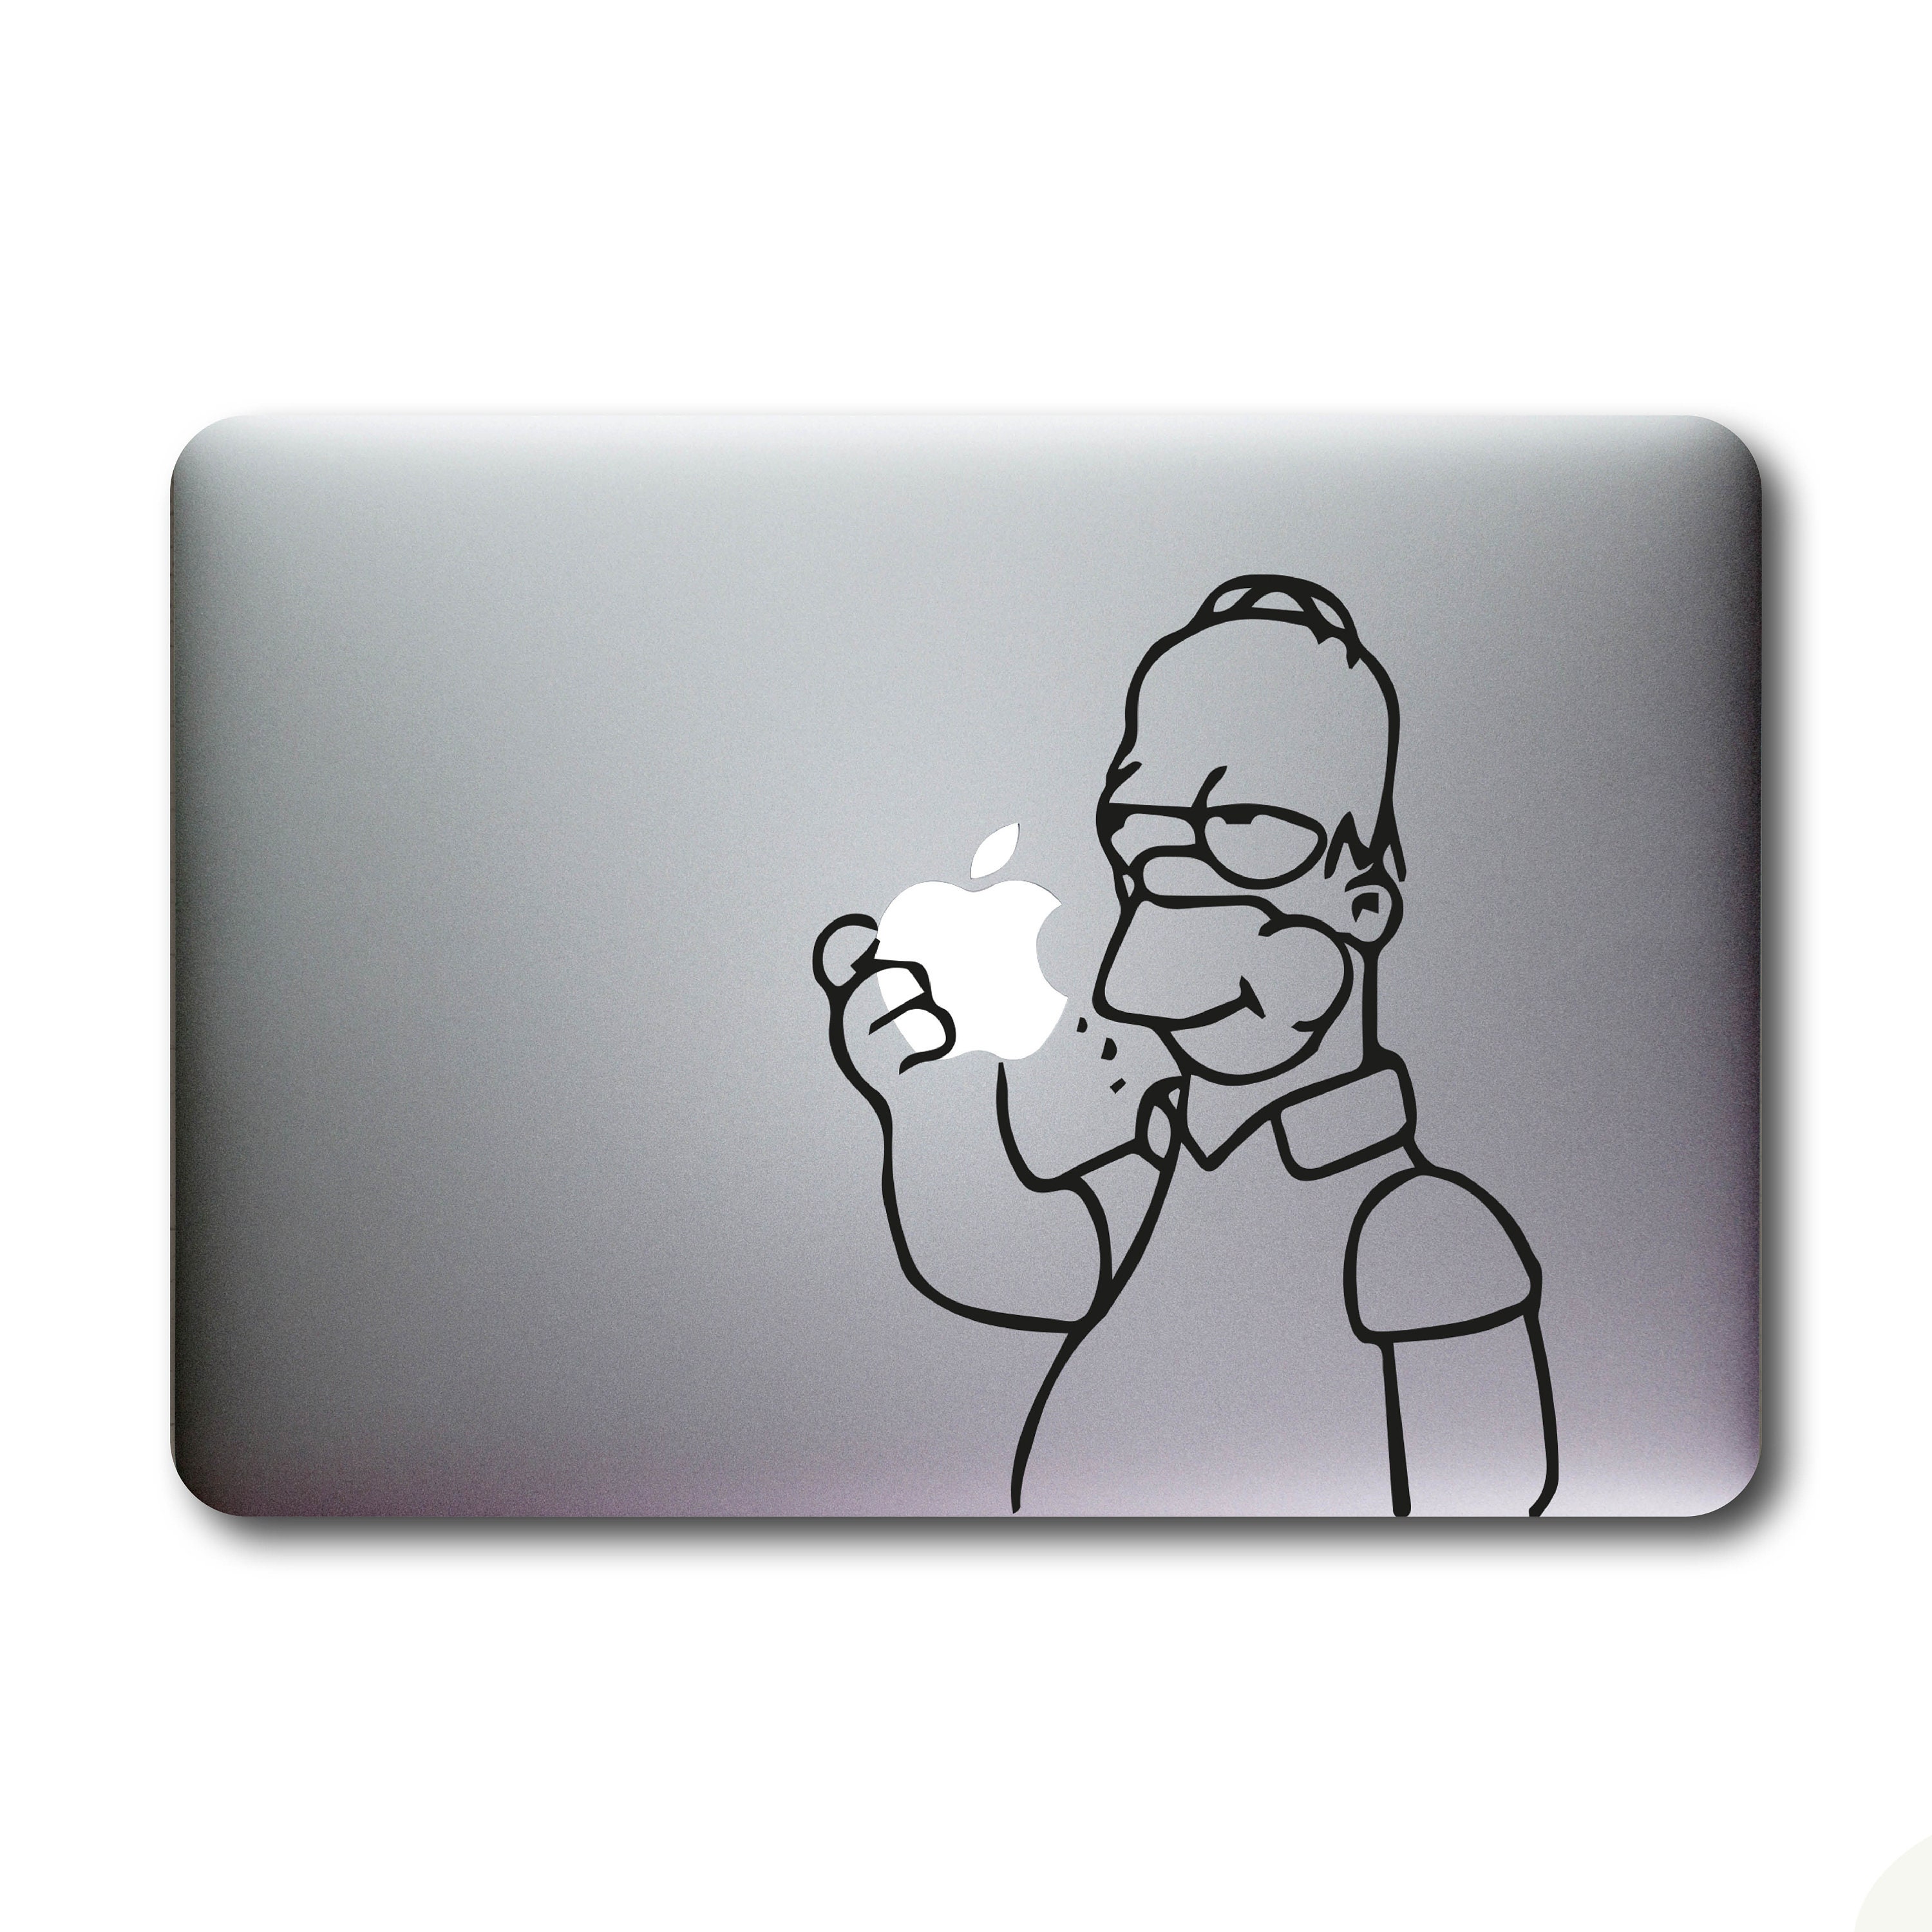 MacBook Sticker Homer Simpson kaufen